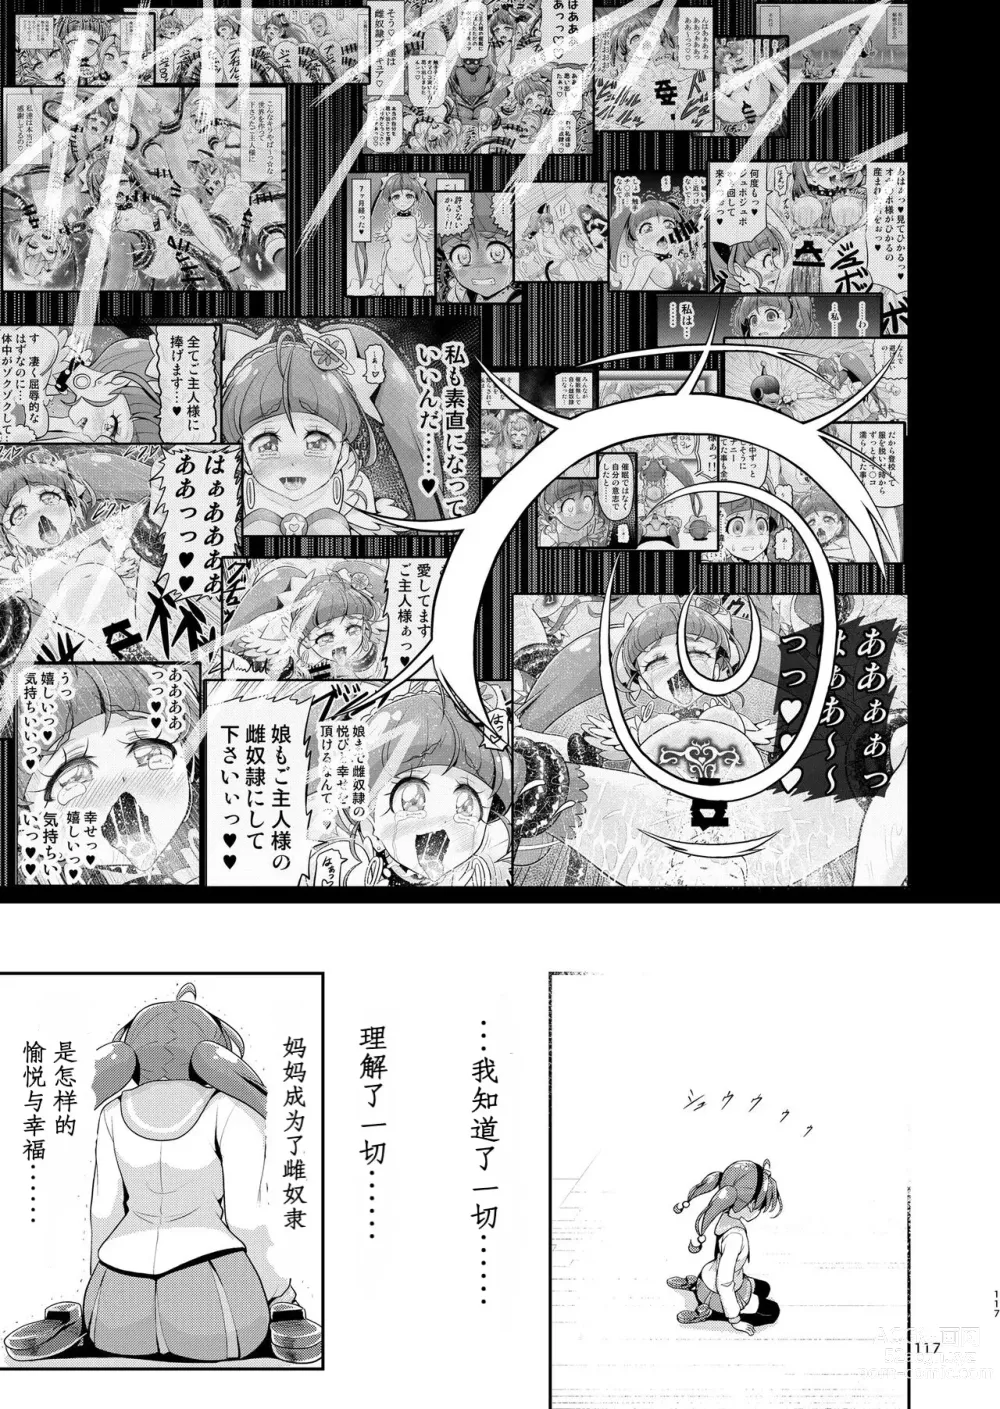 Page 66 of doujinshi Hoshi Asobi 2